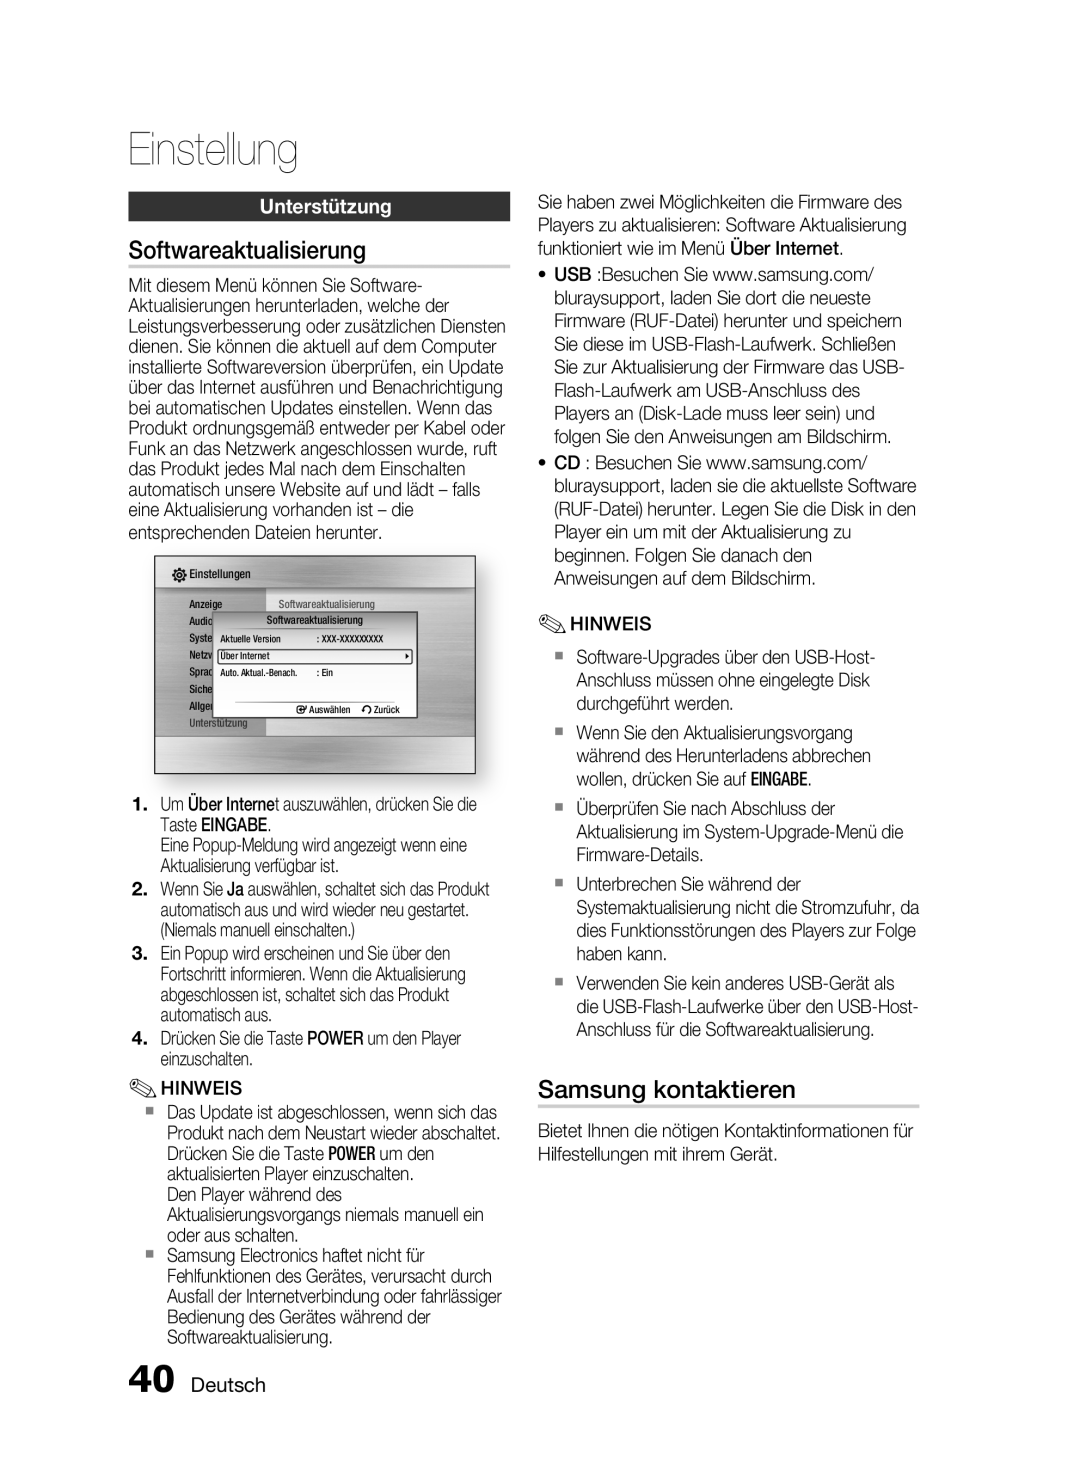 Samsung HT-C6200/EDC, HT-C6200/XEN manual Softwareaktualisierung, Samsung kontaktieren, Unterstützung, Deutsch, Einstellung 